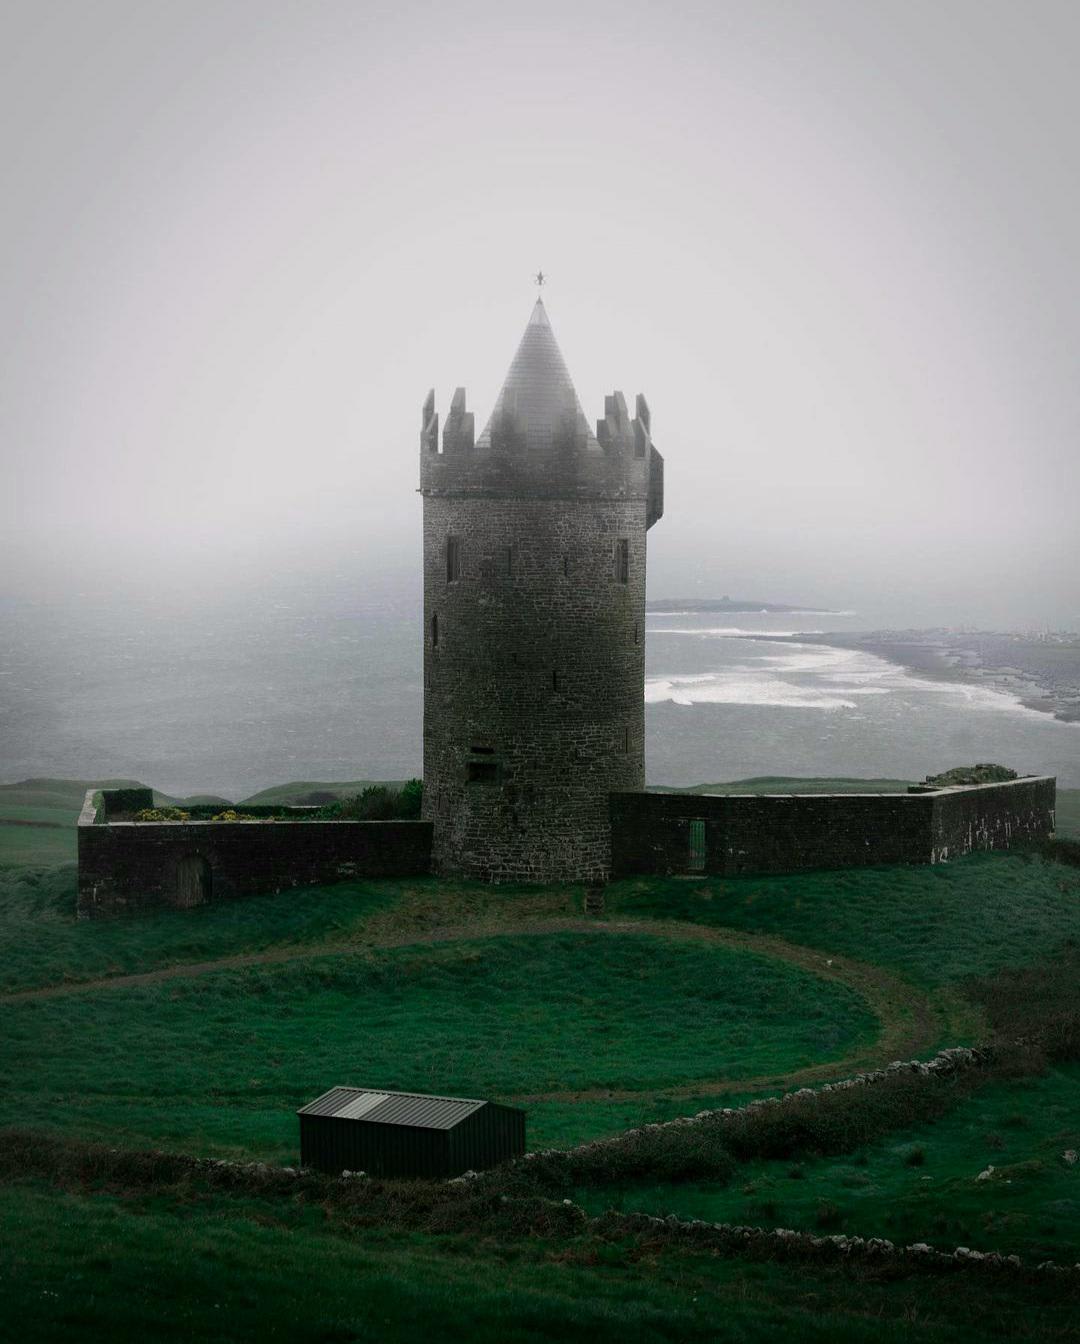 The 16th century Doonagore Castle overlooking the Atlantic Ocean in Doolin, Clare, Ireland.